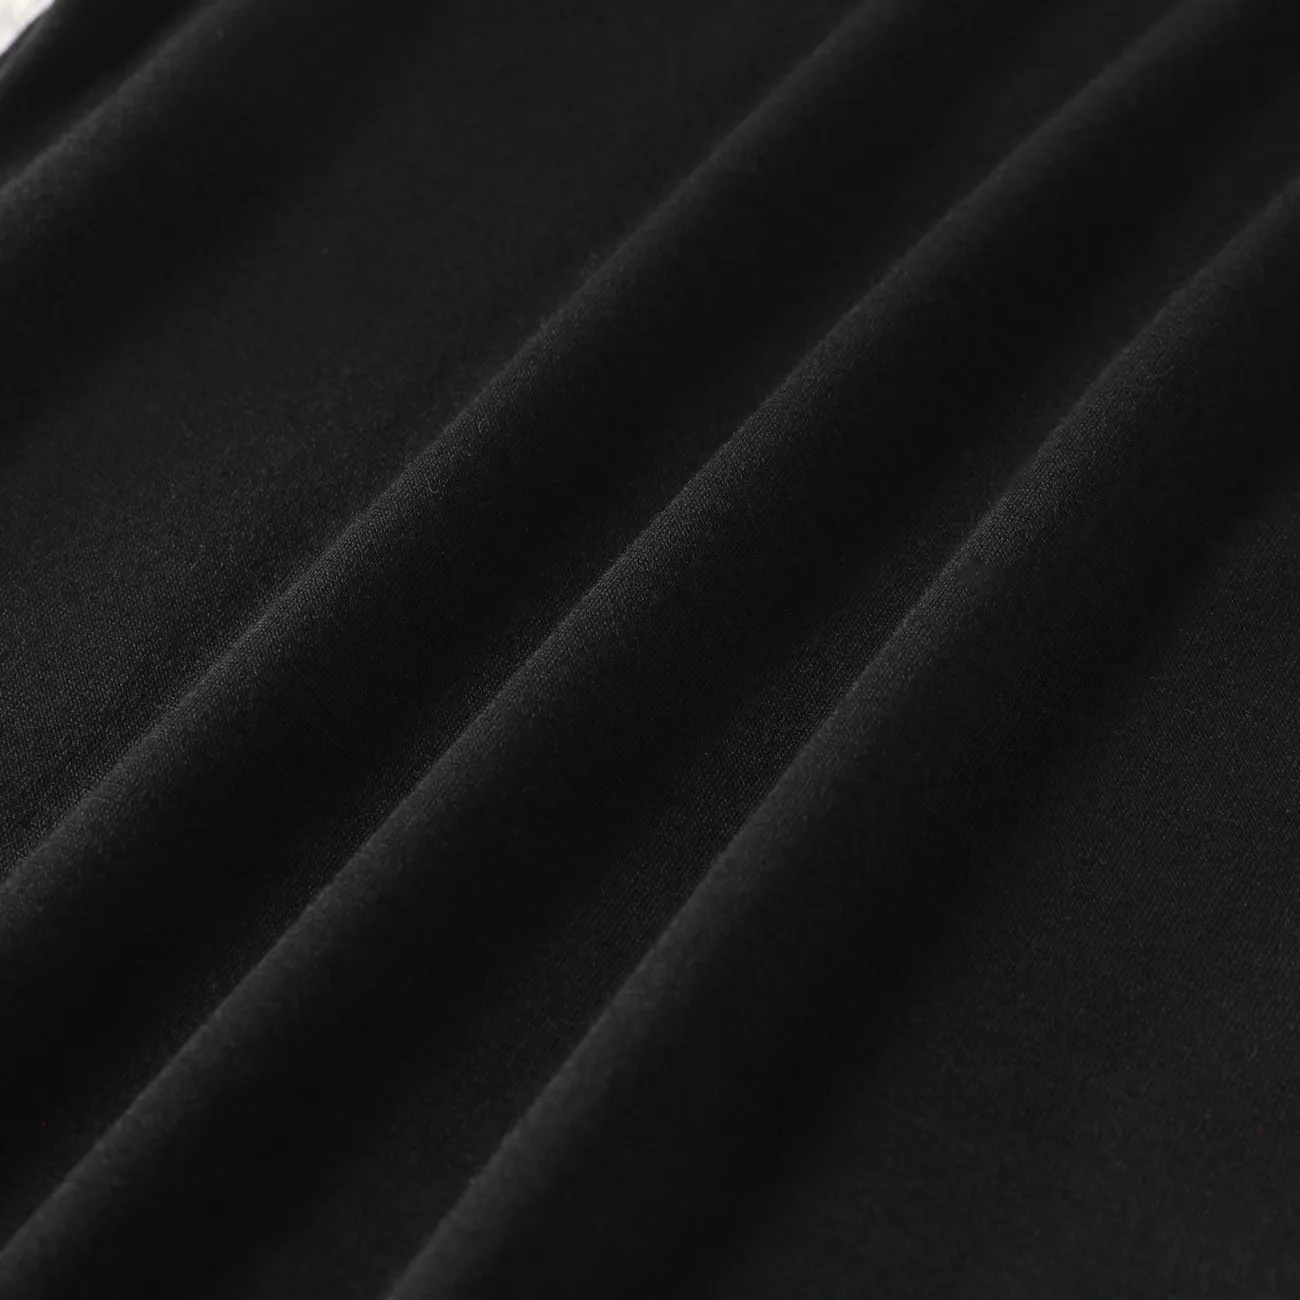 Enfants Fille Couture de tissus Motifs animaux Robes Noir big image 1